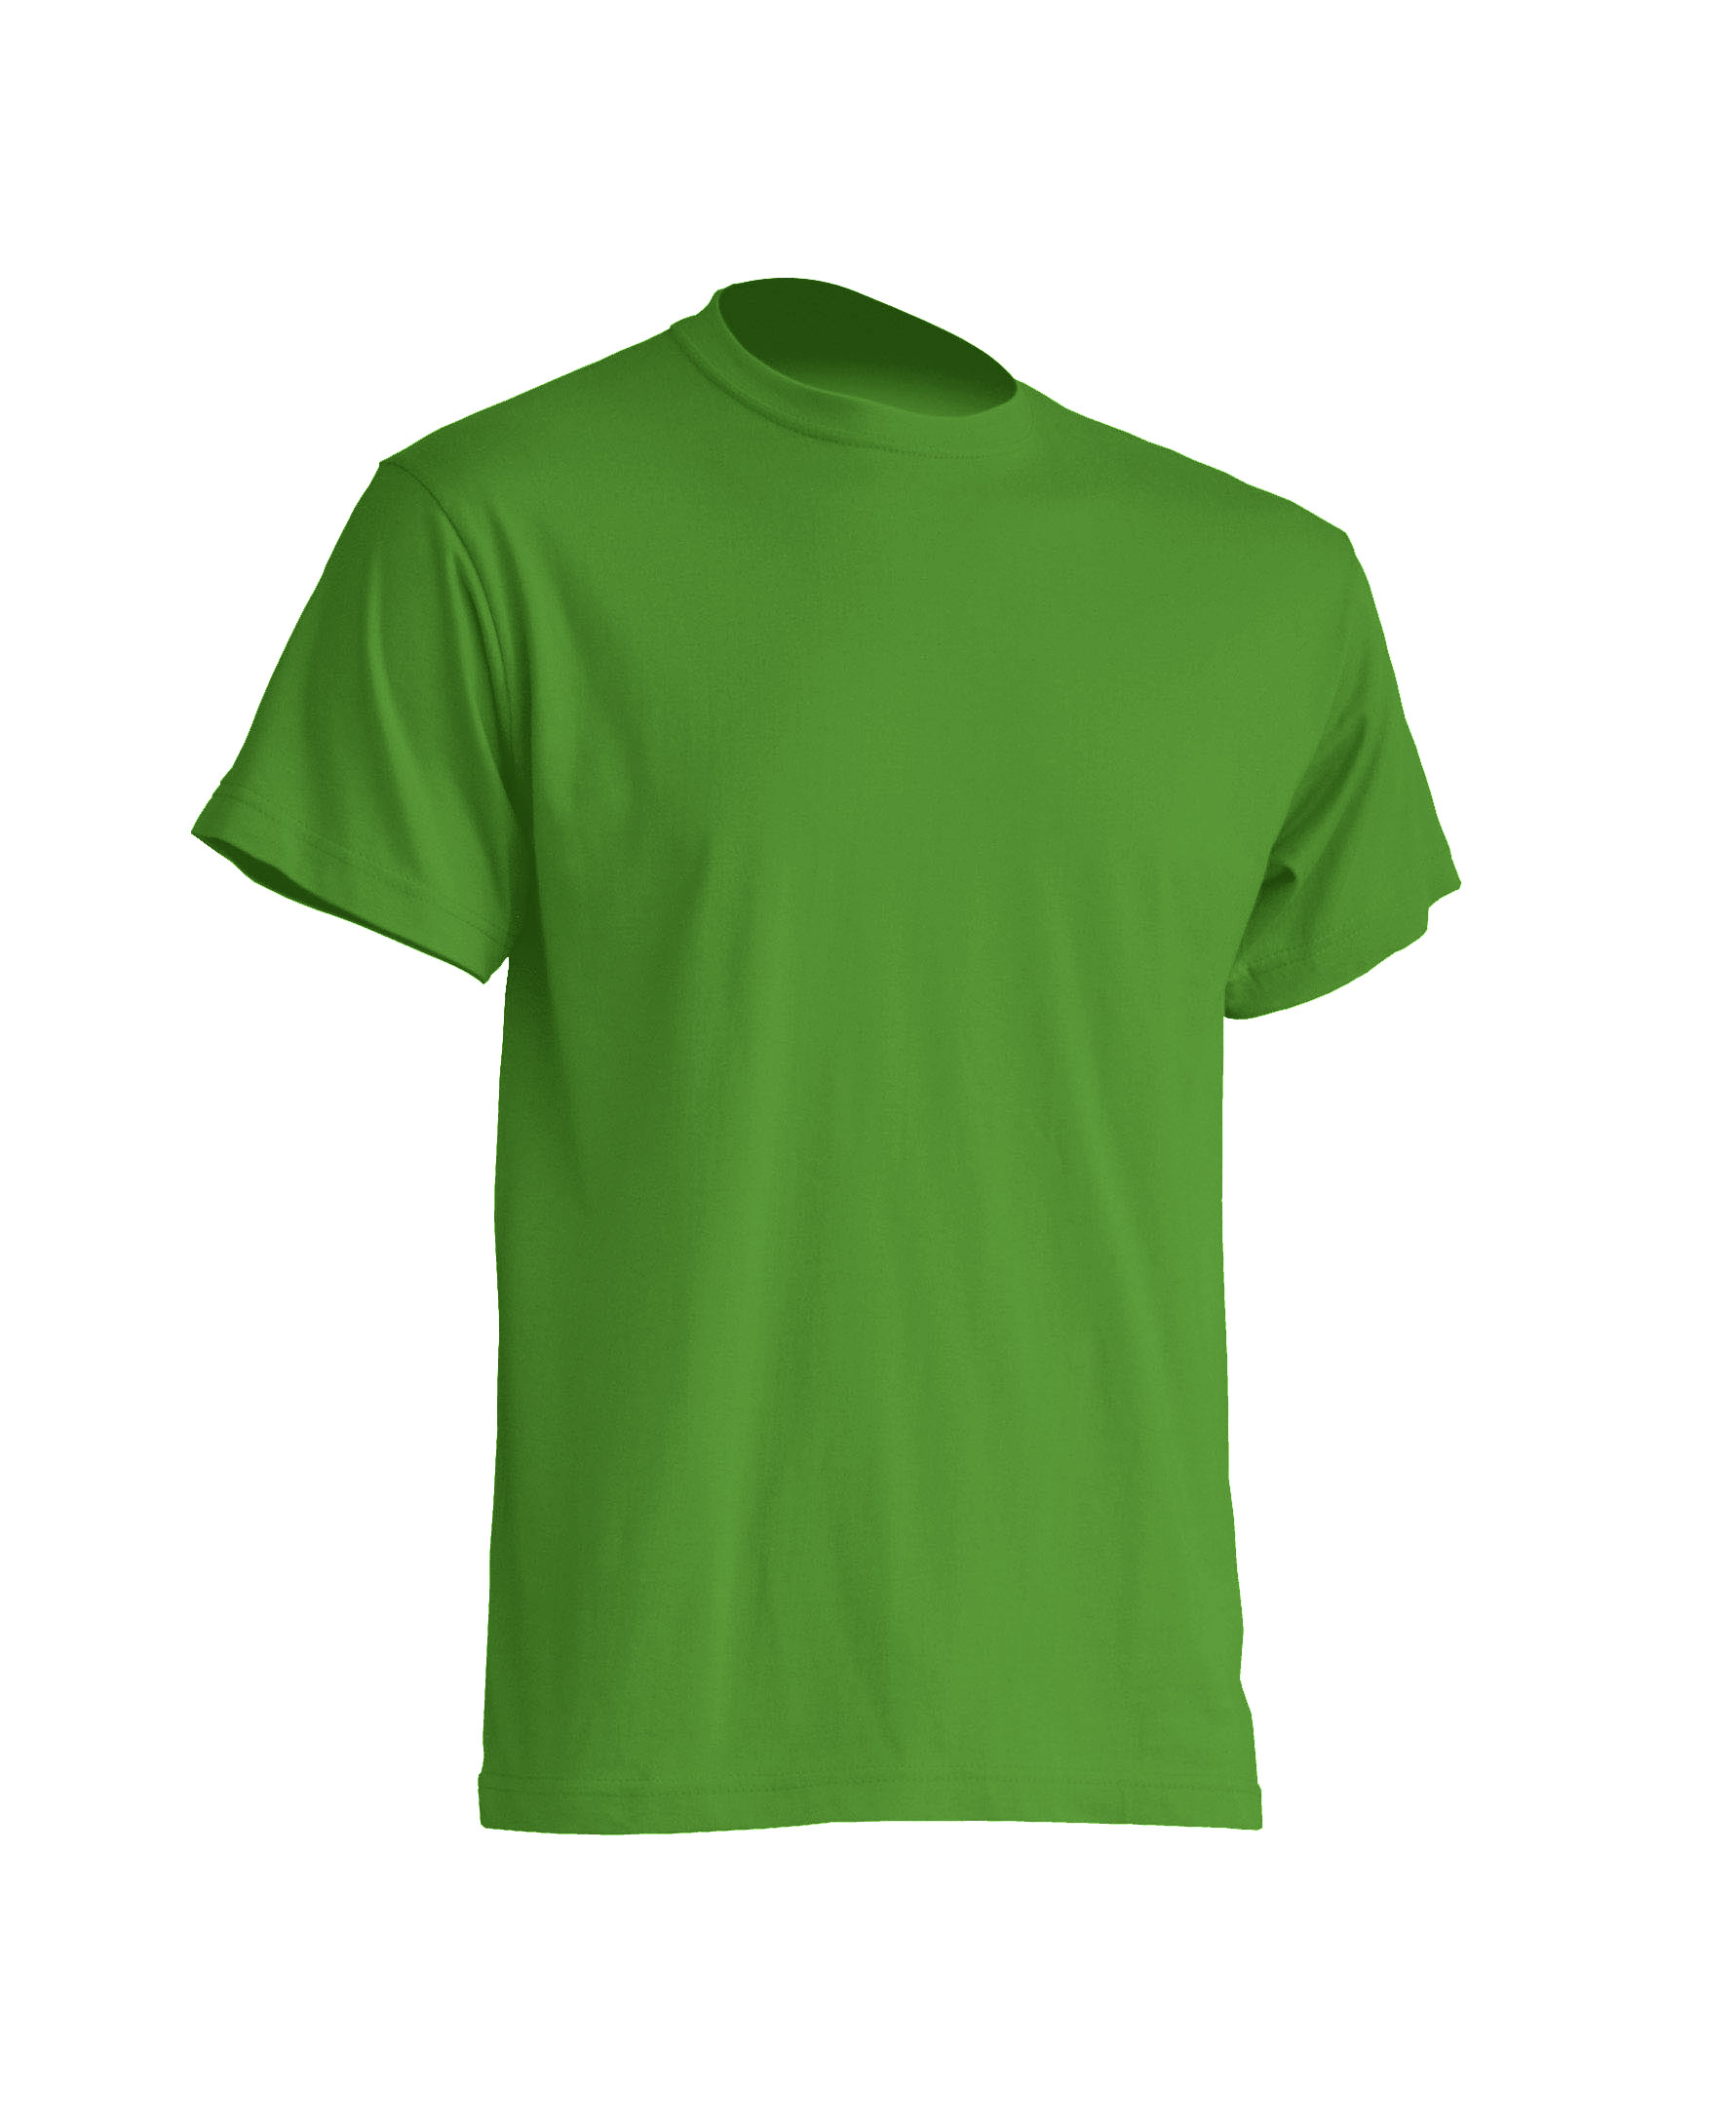 Купить базовые футболки хорошего качества. Футболка мужская. Зеленая футболка мужская. Базовые футболки мужские. Приталенная футболка мужская.